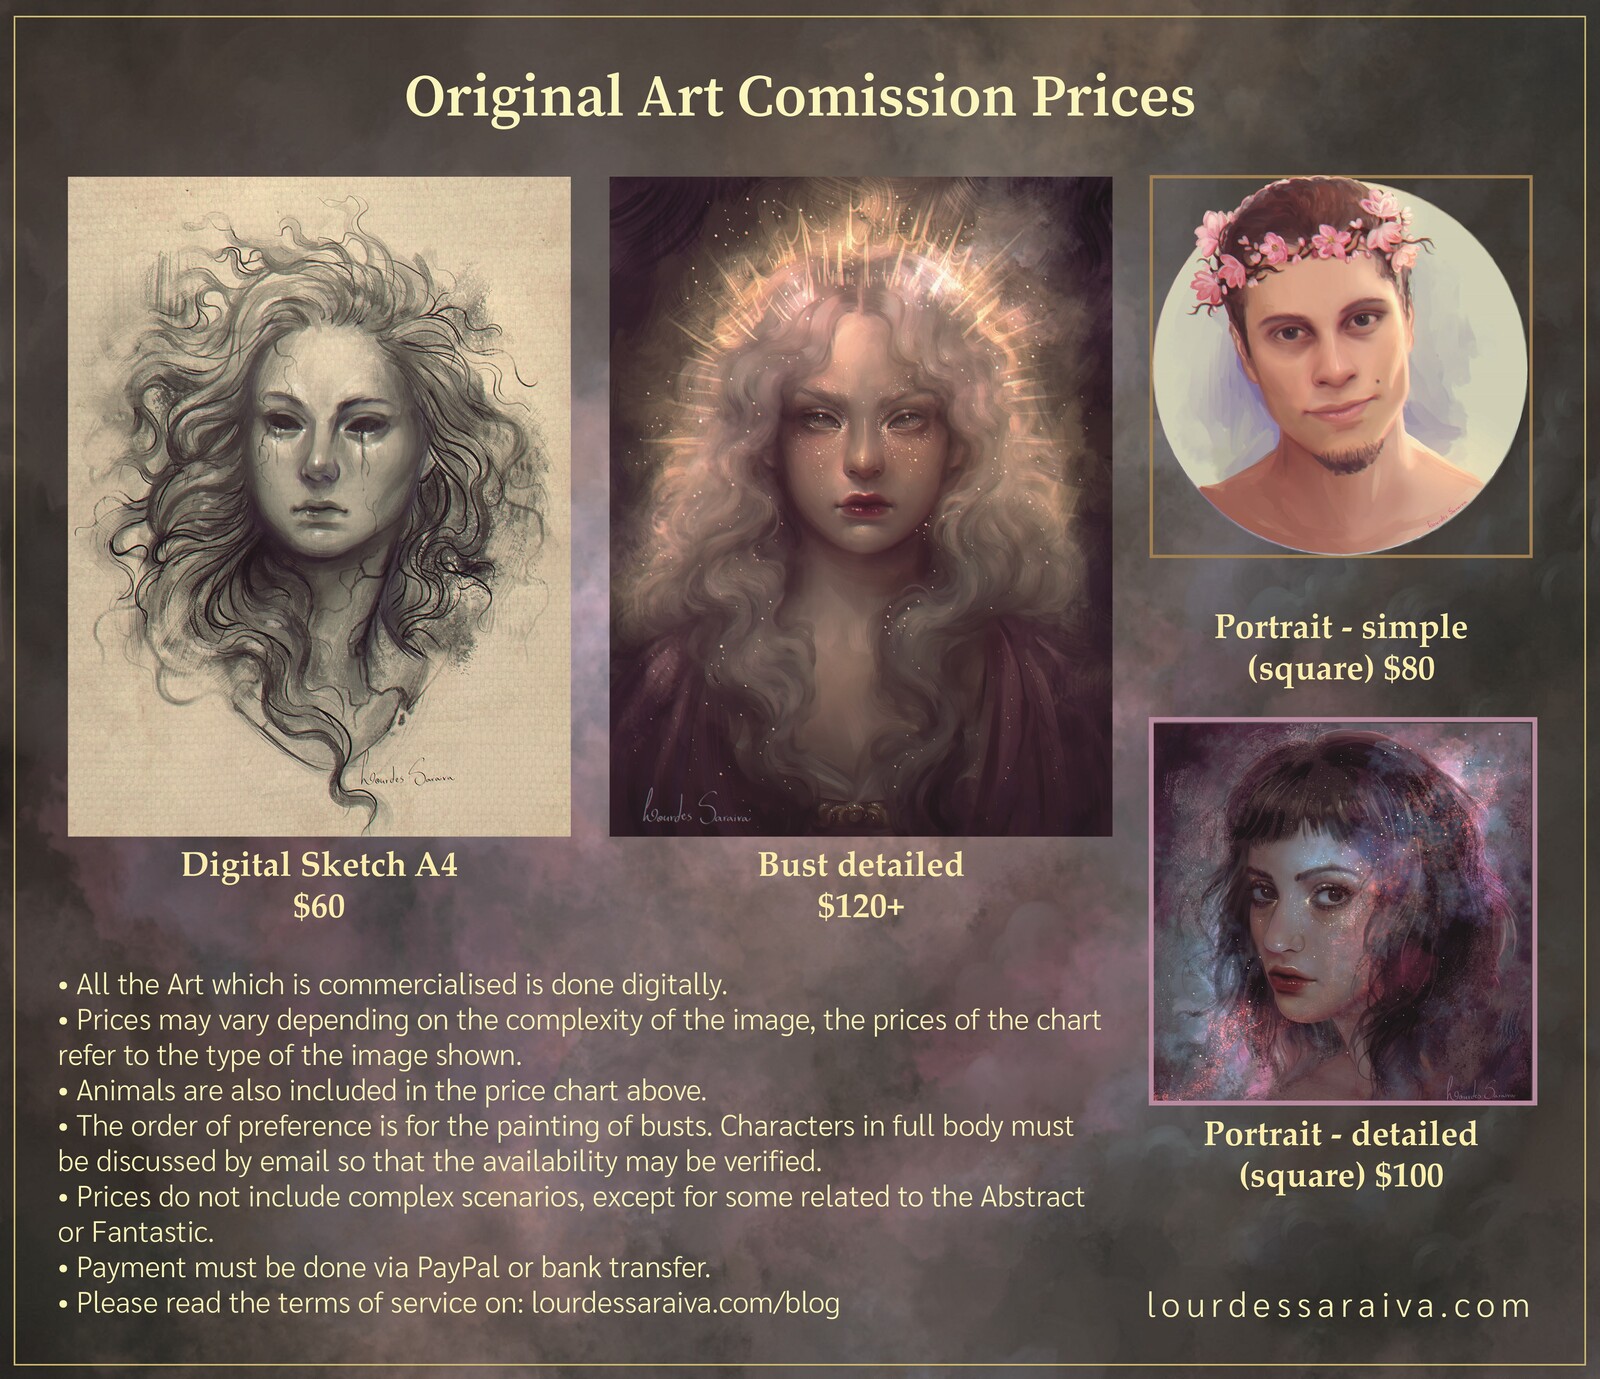  Original Art Comission Prices - Tabela de Preços para Arte Original (EN/PT-BR)